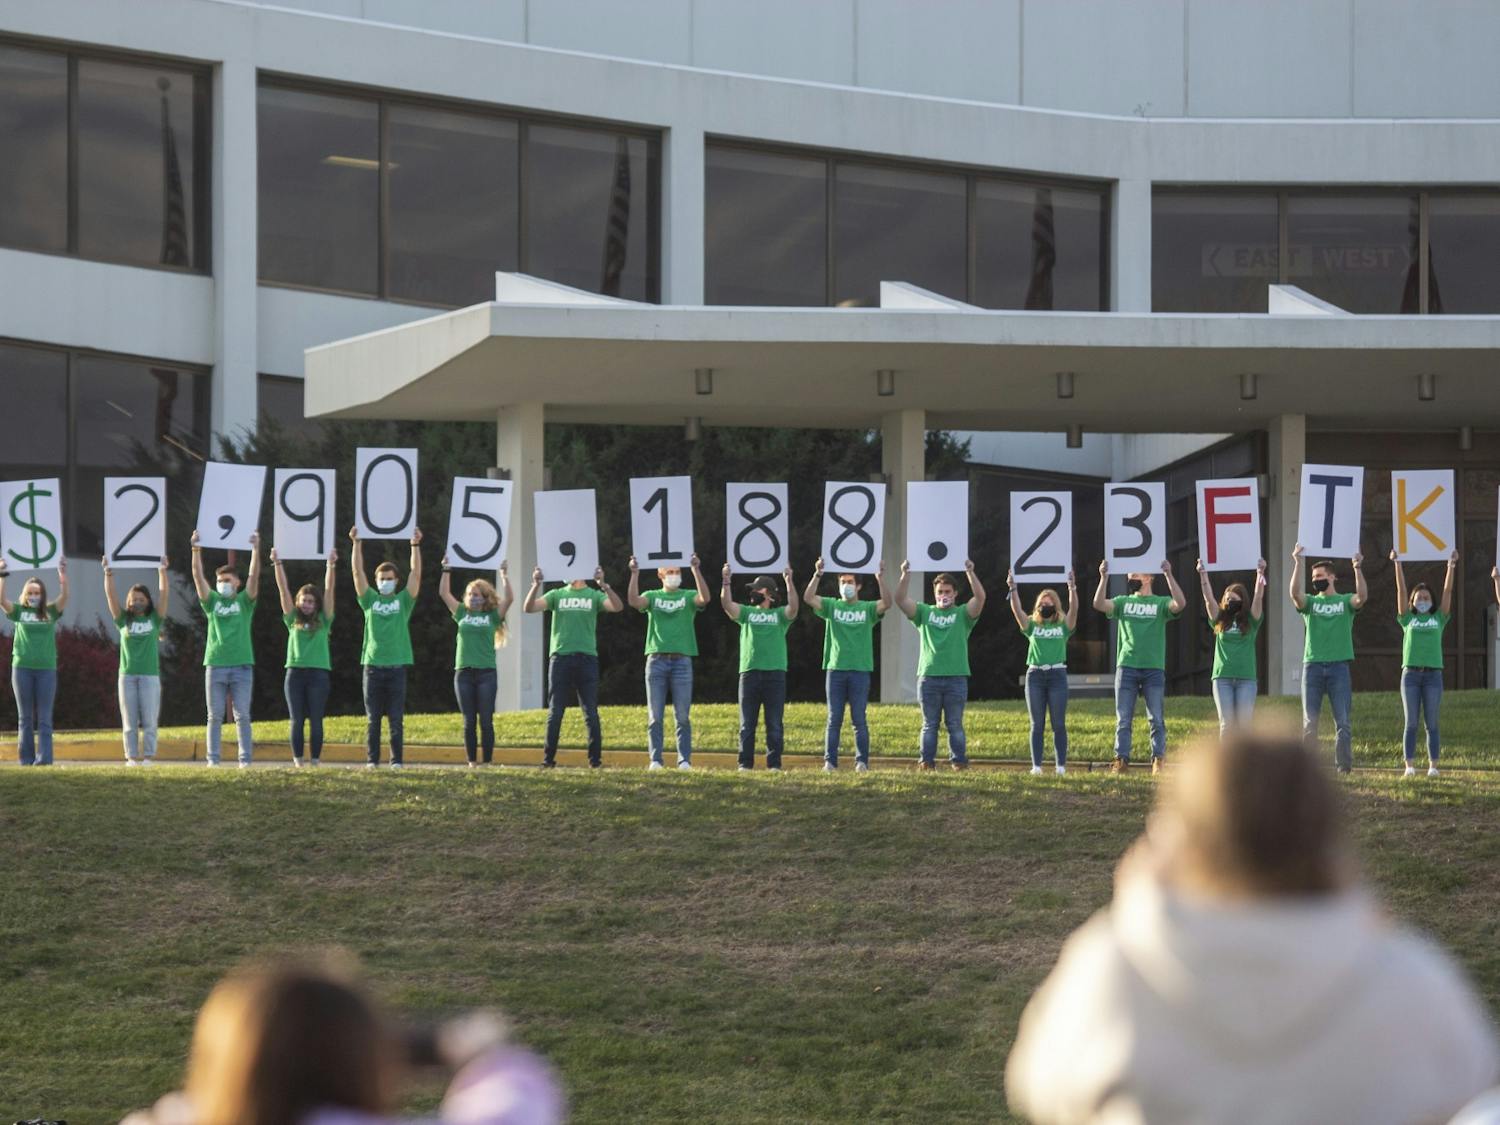 GALLERY: IU Dance Marathon raises over $2.9 million for Riley Hospital for Children